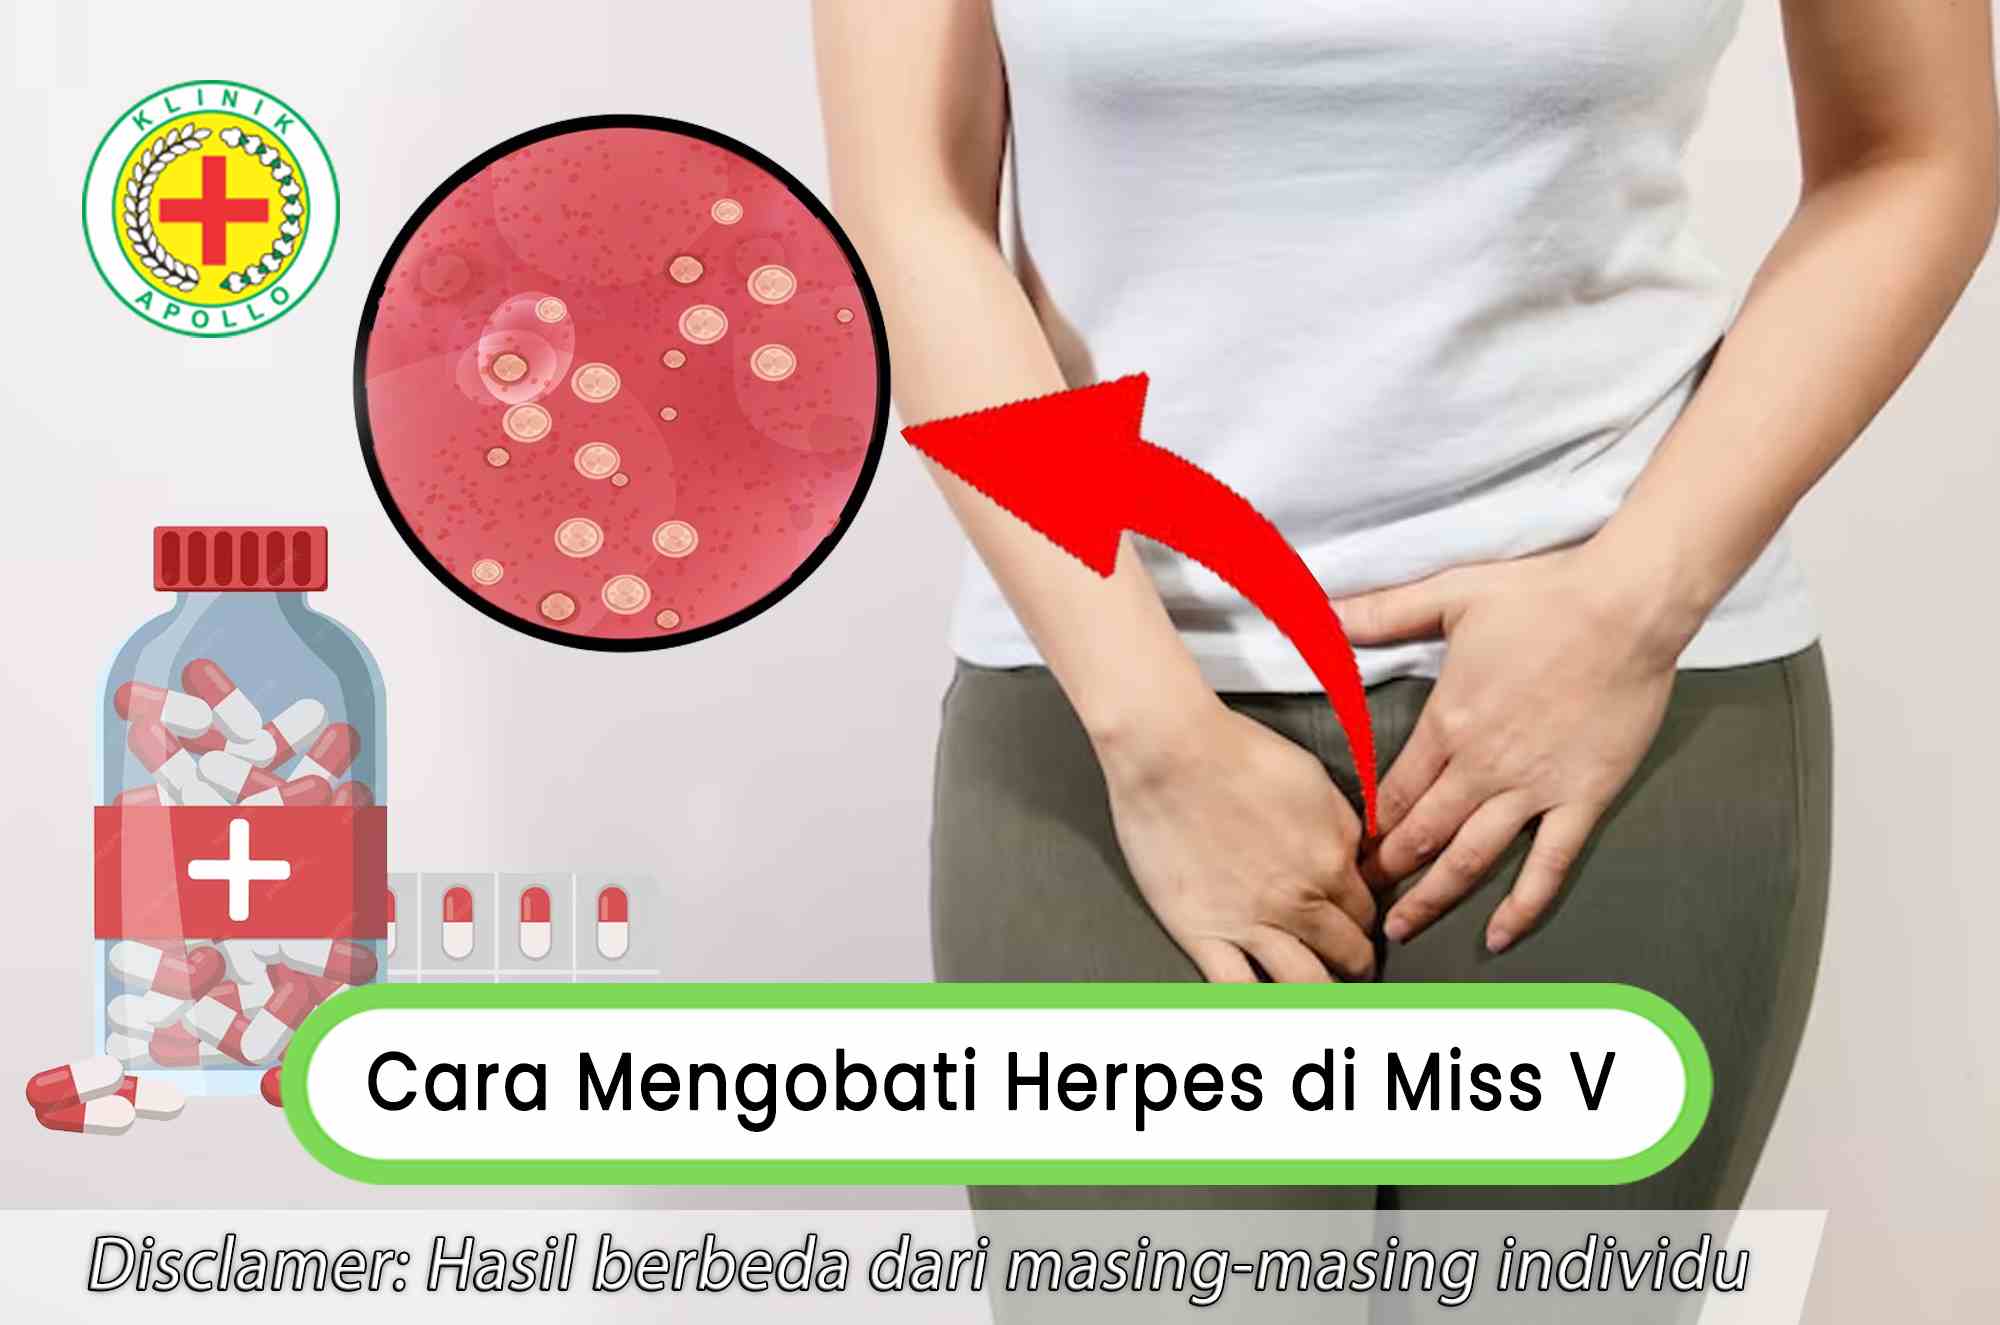 Konsultasikan dengan dokter ahli dan ketahui cara mengobati herpes di miss v.